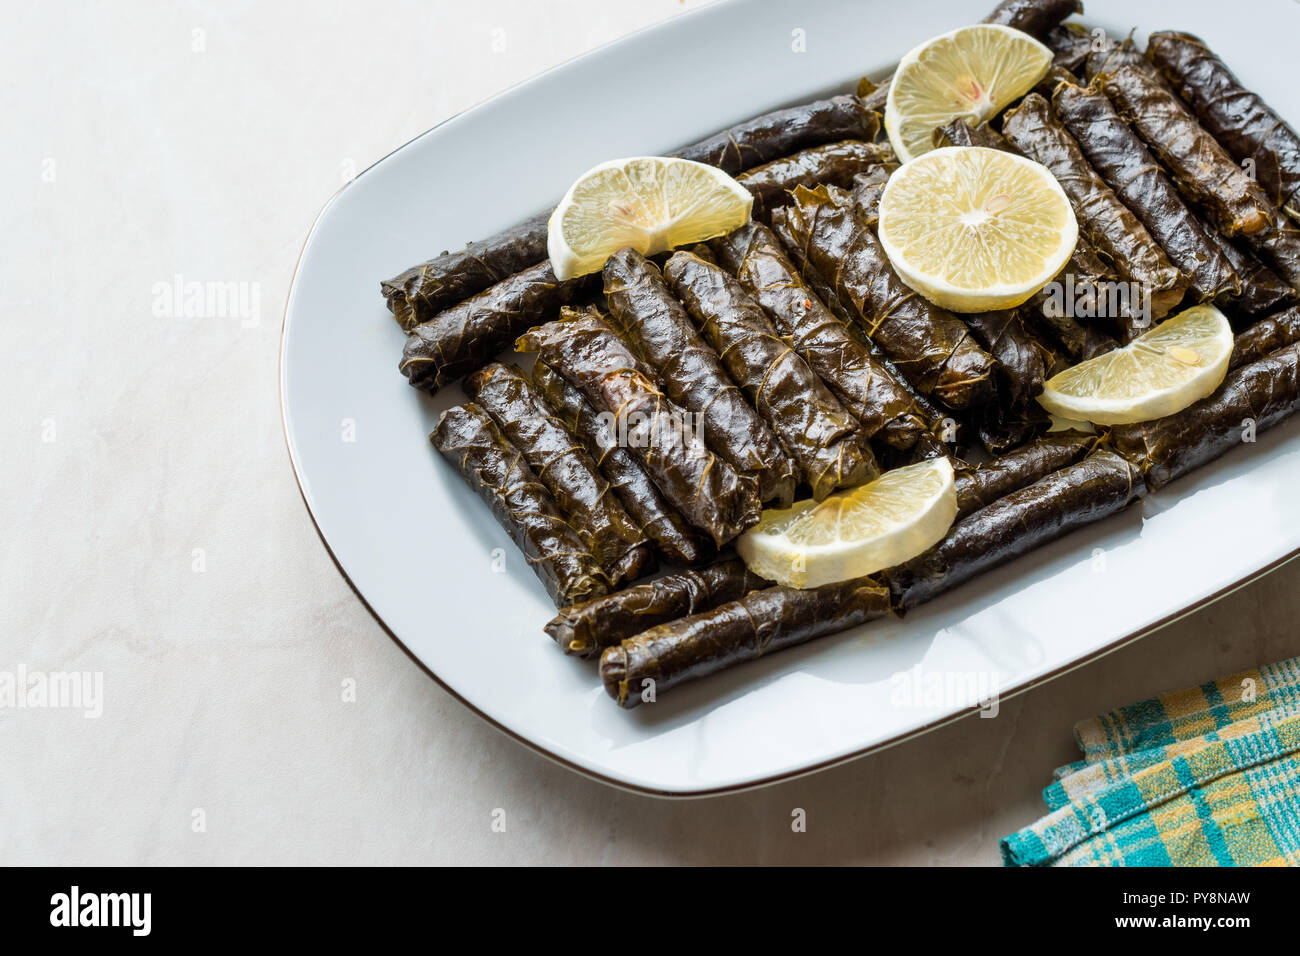 Feuilles de vigne farcies avec de l'huile d'olive et citron / Zeytinyagli Yaprak Sarma Dolma. Aliments biologiques traditionnelles. Banque D'Images